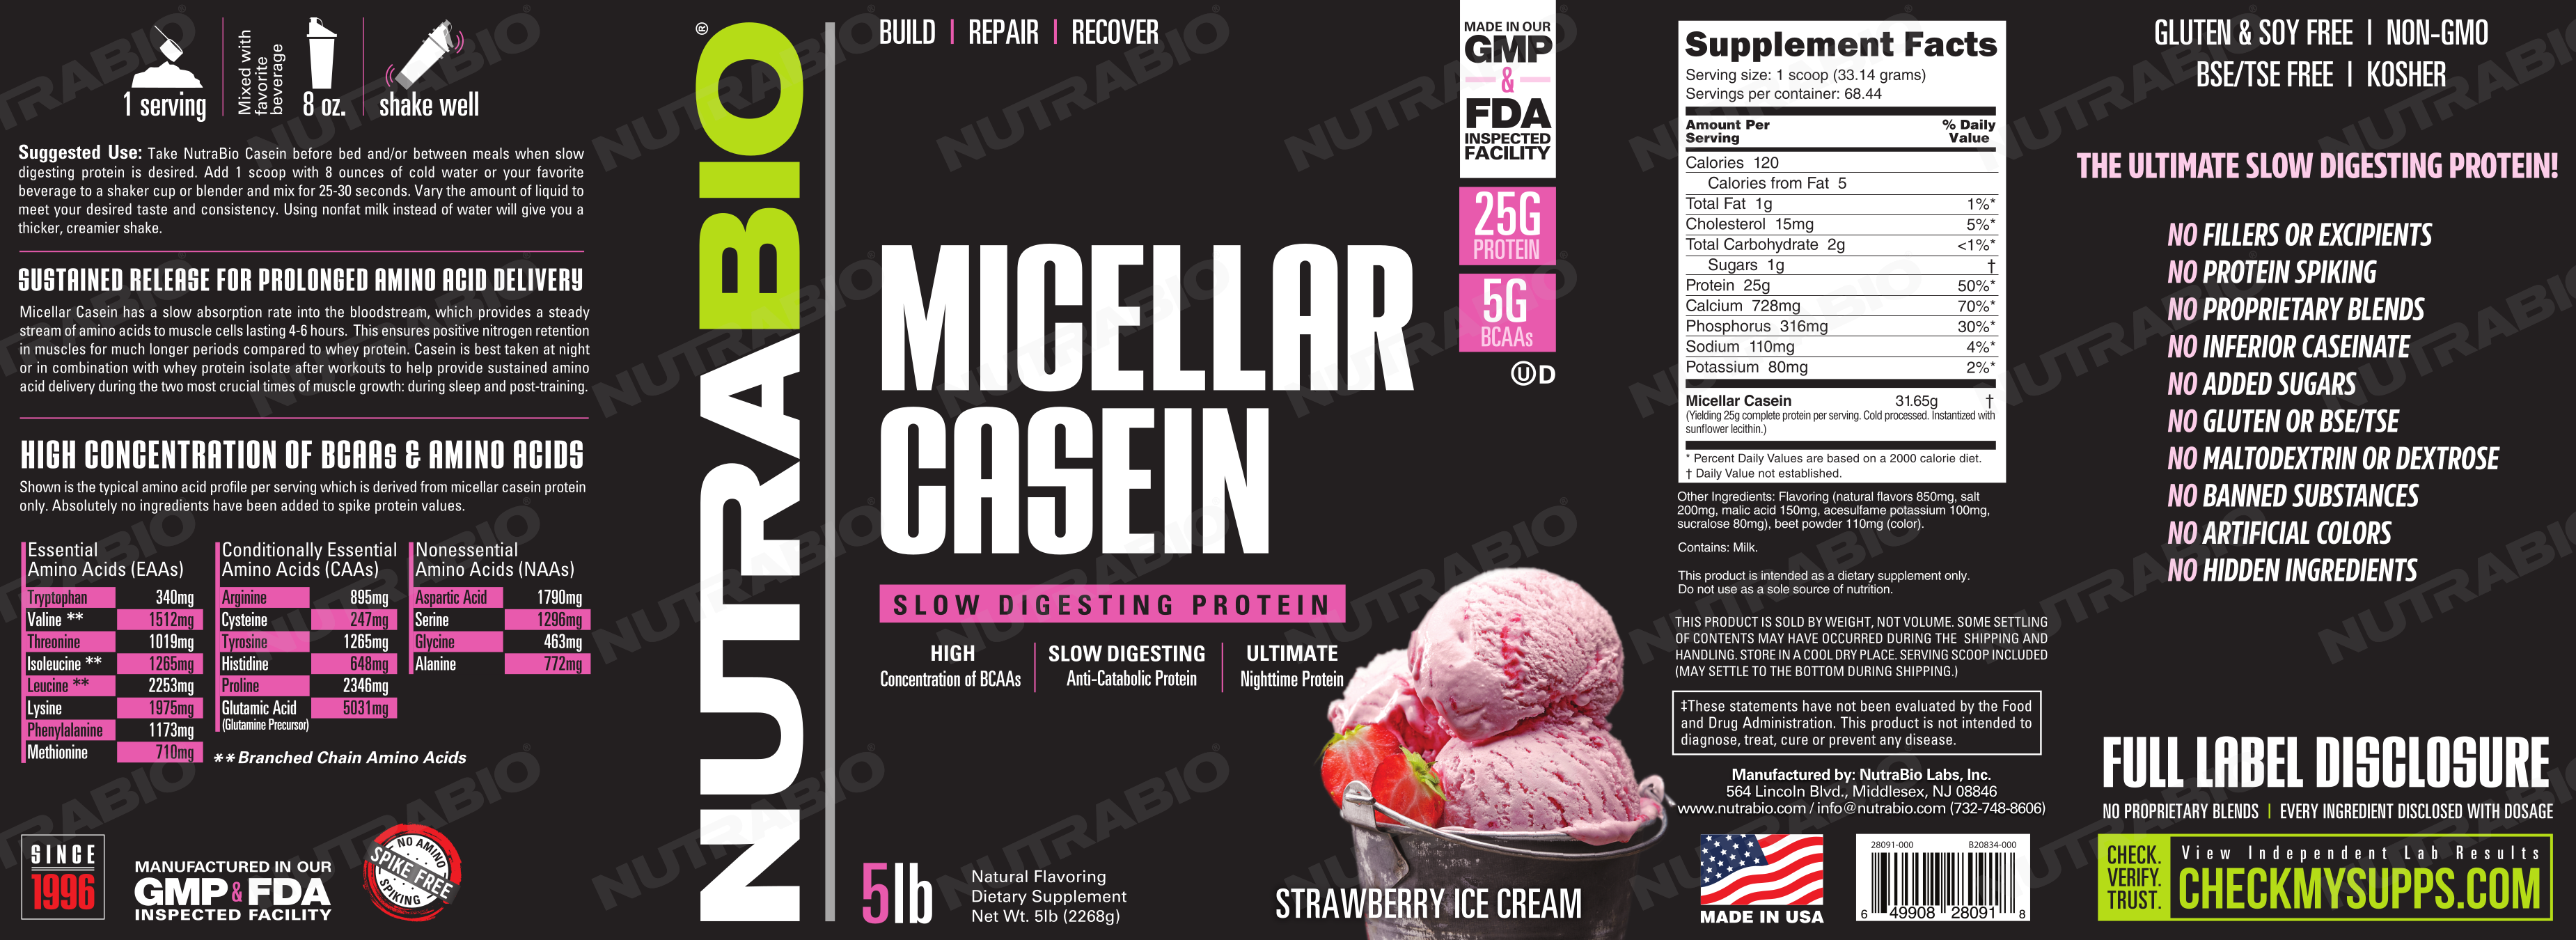 NutraBio Micellar Casein Strawberry Ice Cream Label